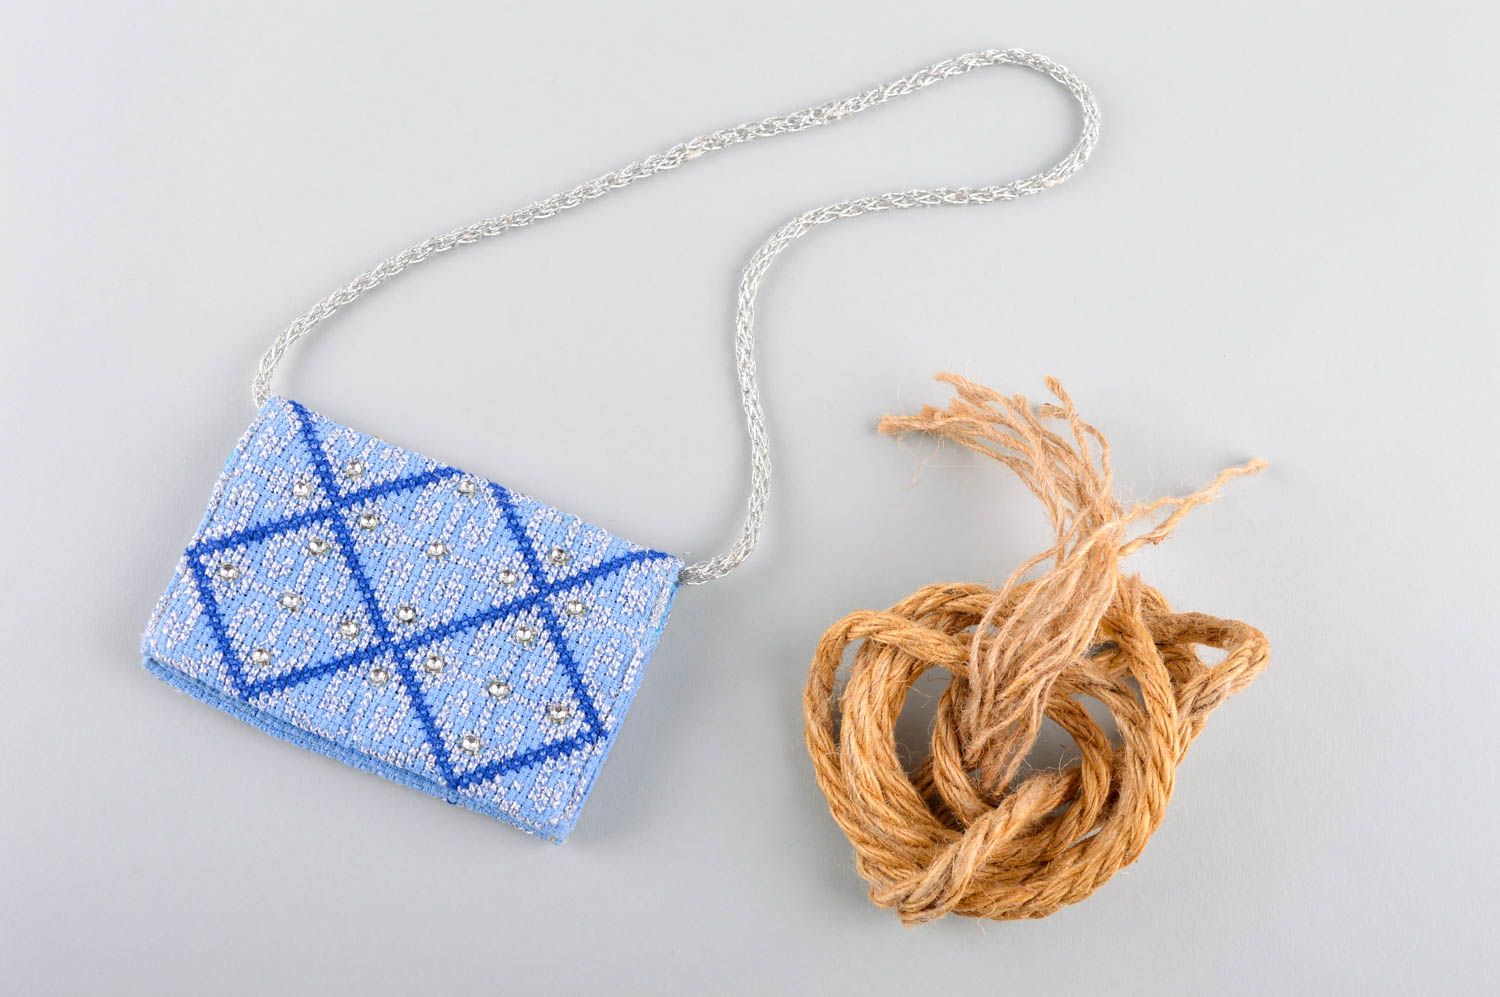 Сумка ручной работы сумка из ткани голубая с молнией женская сумка кошелек фото 1